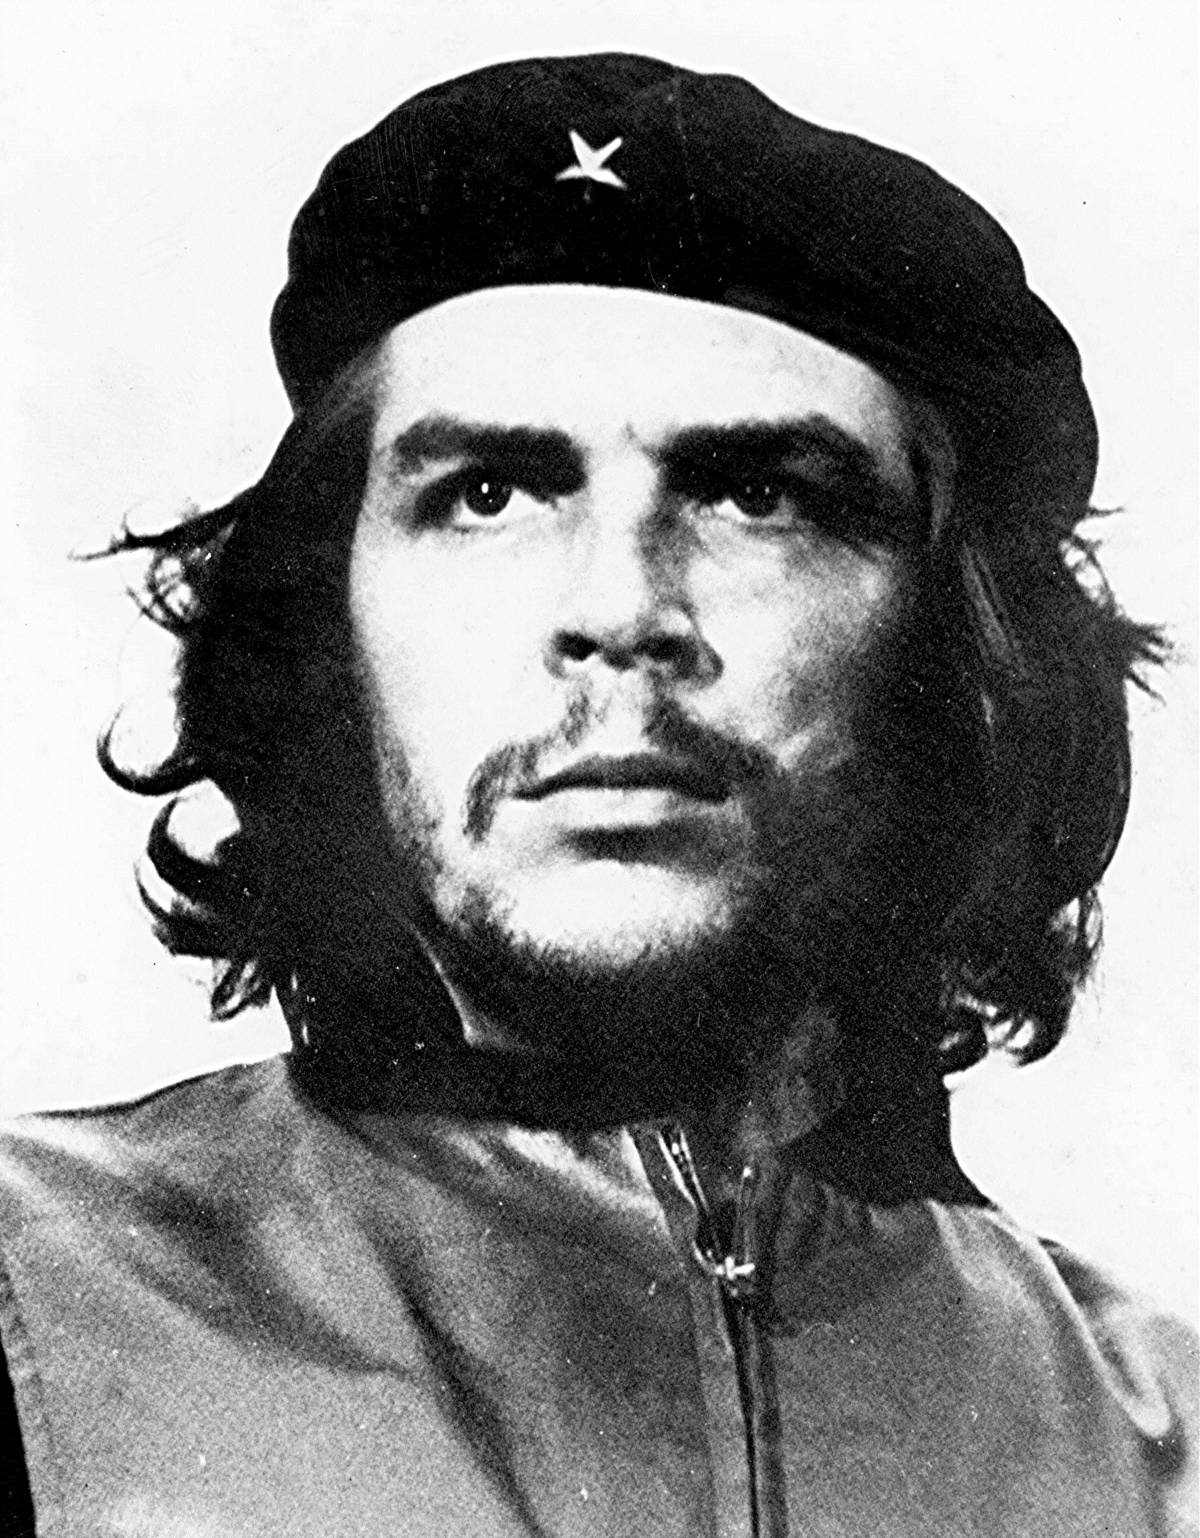 Gigantografia di Che Guevara nella sede Onu. È polemica